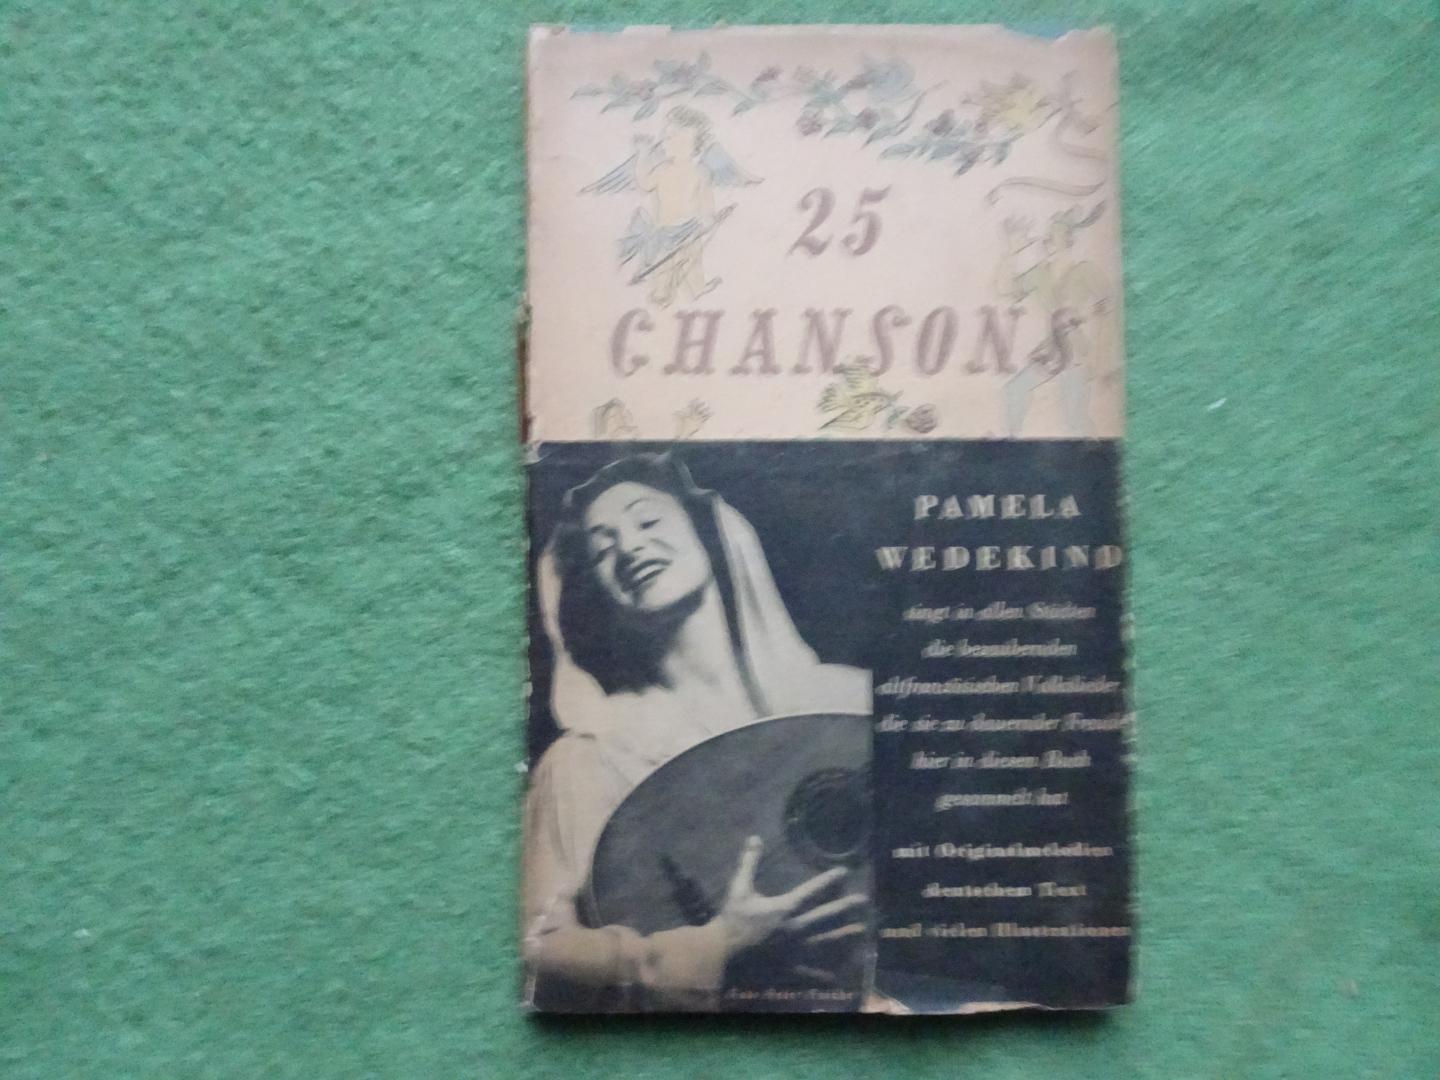 Pamela Wedekind - 25 CHANSONS DE LA VIEILLE FRANCE